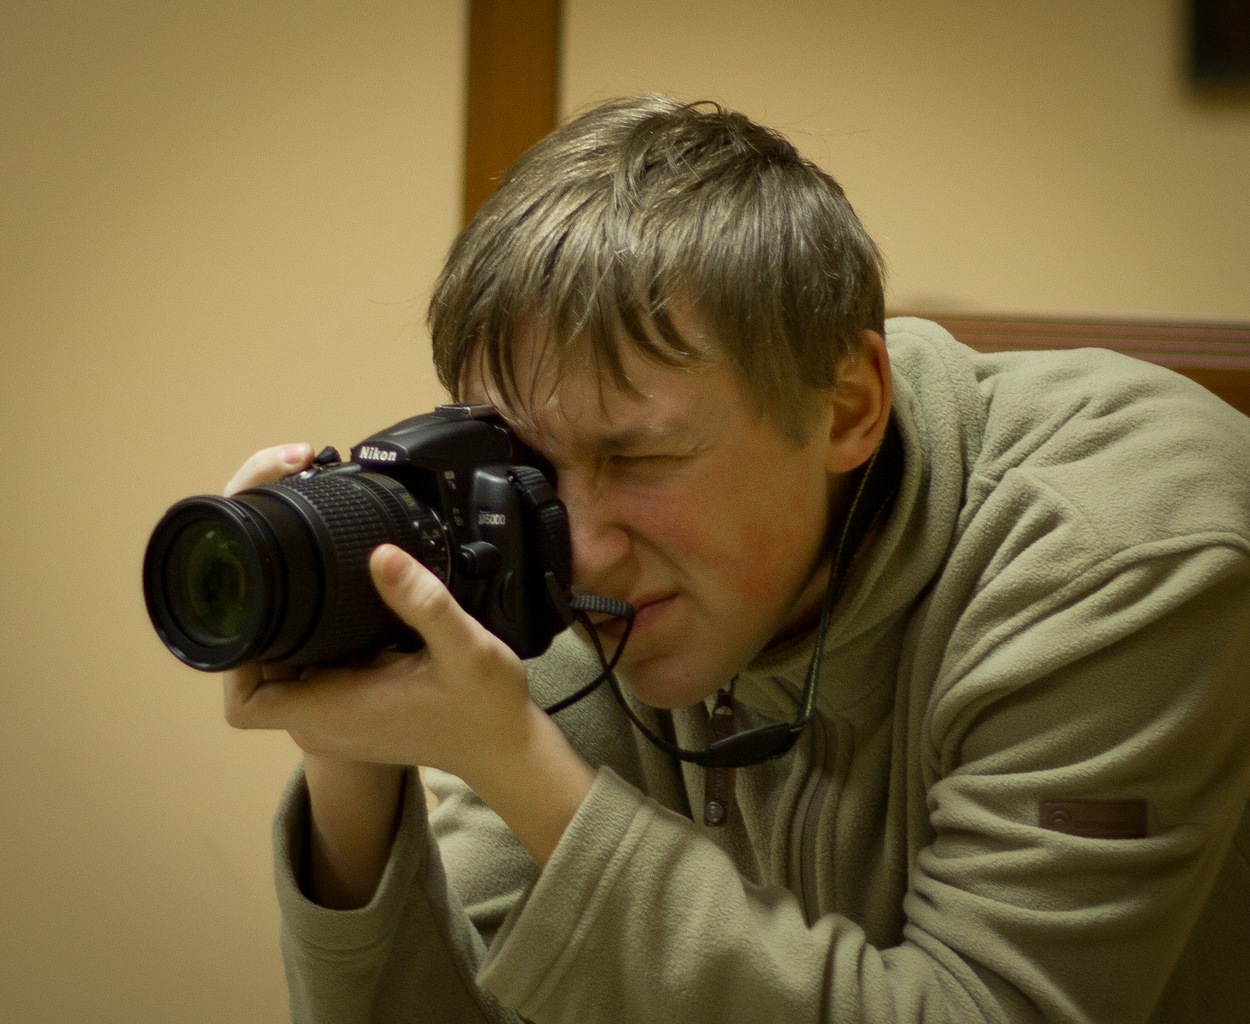 Илья Викдорович фотограф и участник археологического клуба с 10 лет, за работой